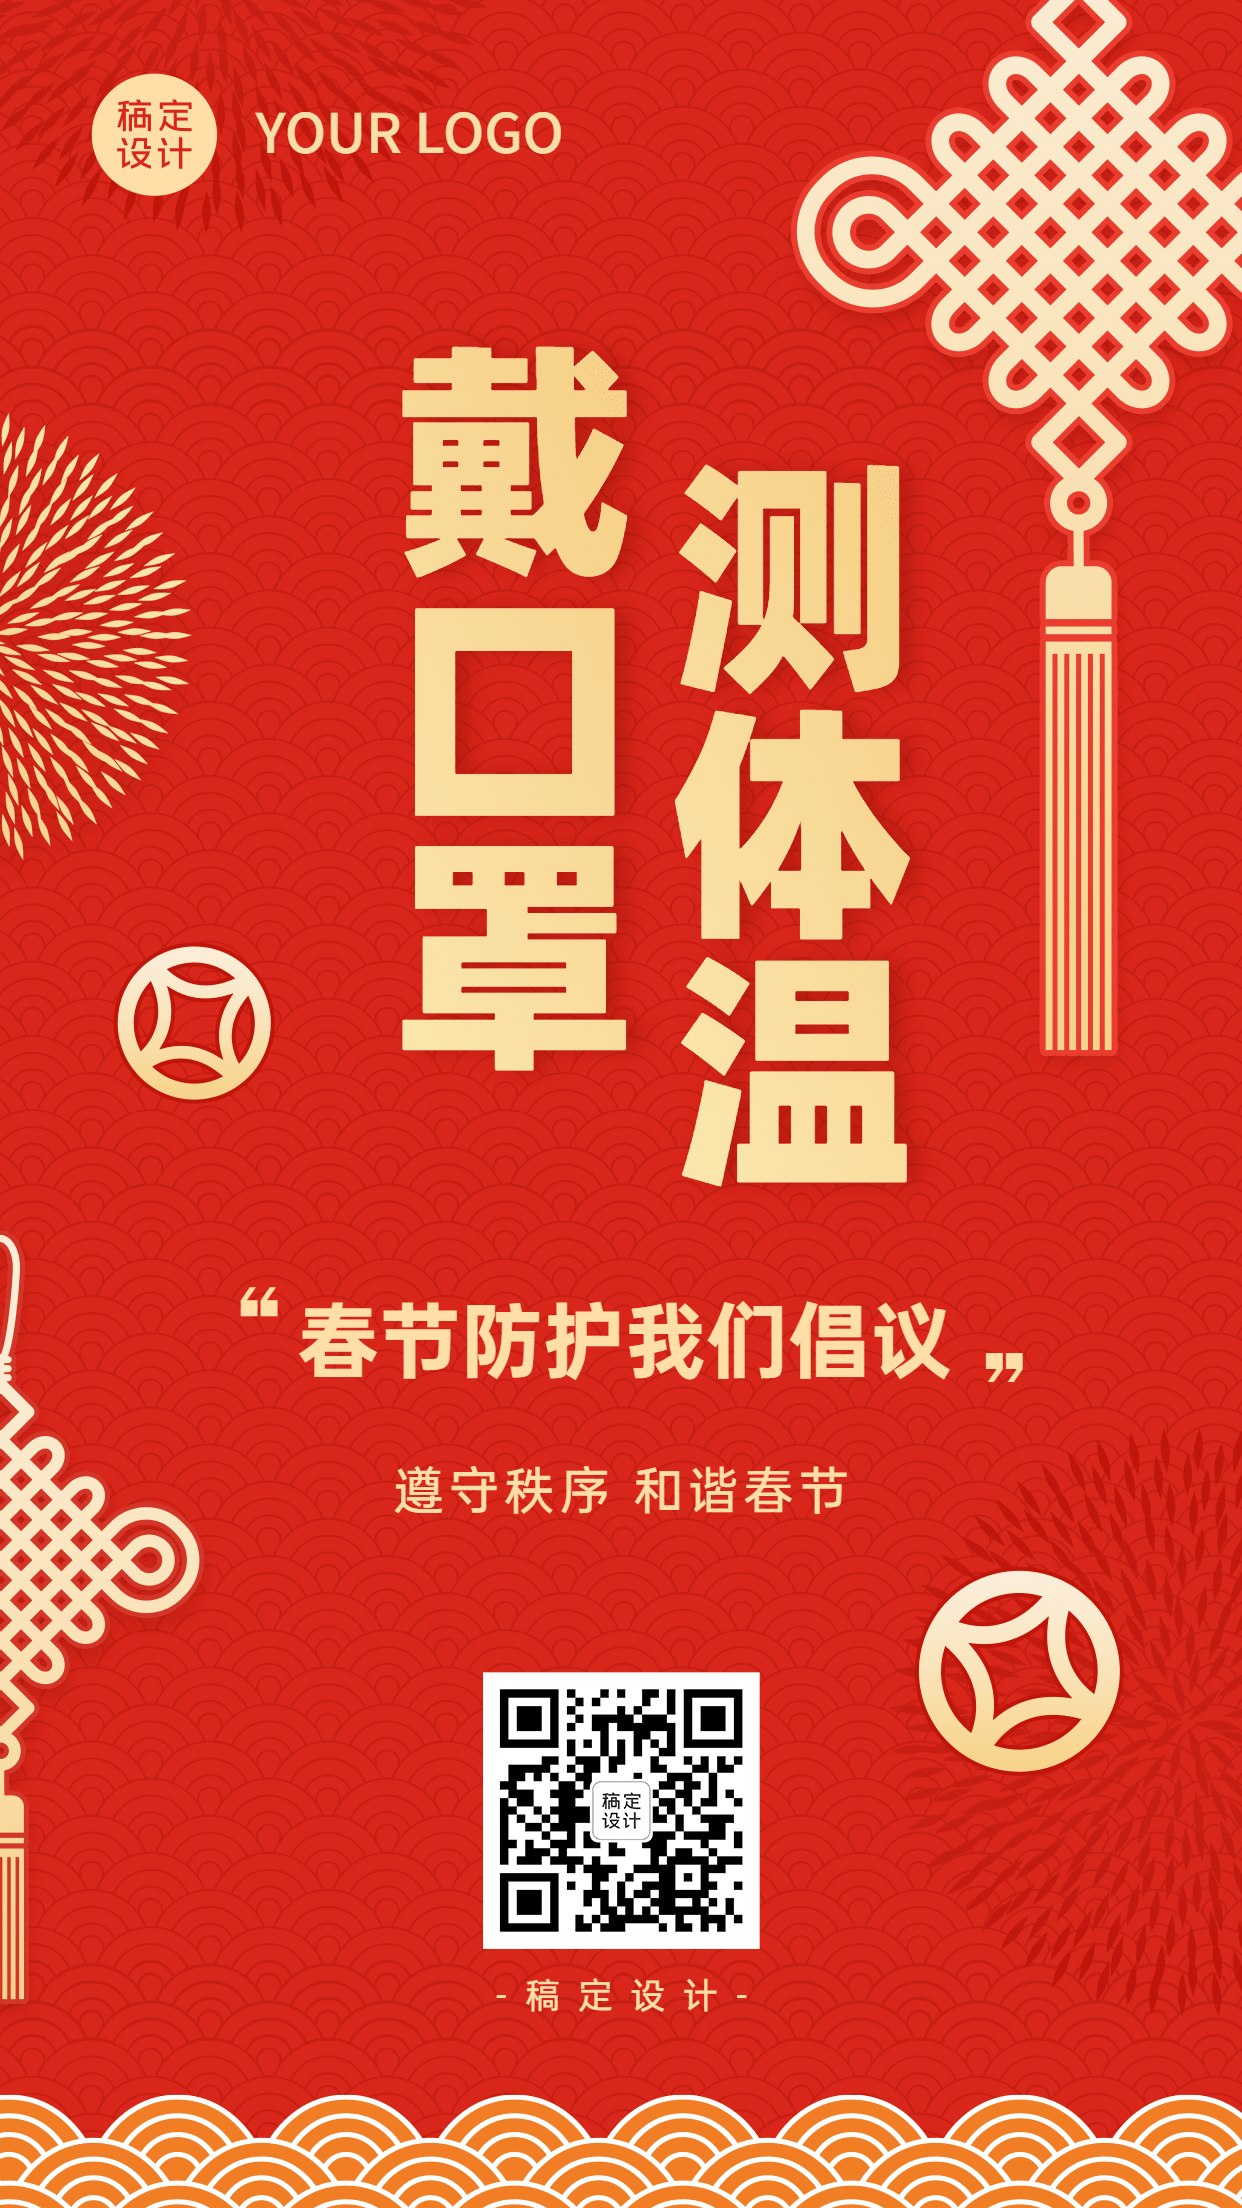 春节疫情防控宣传新年过节倡议倡导融媒体手机海报